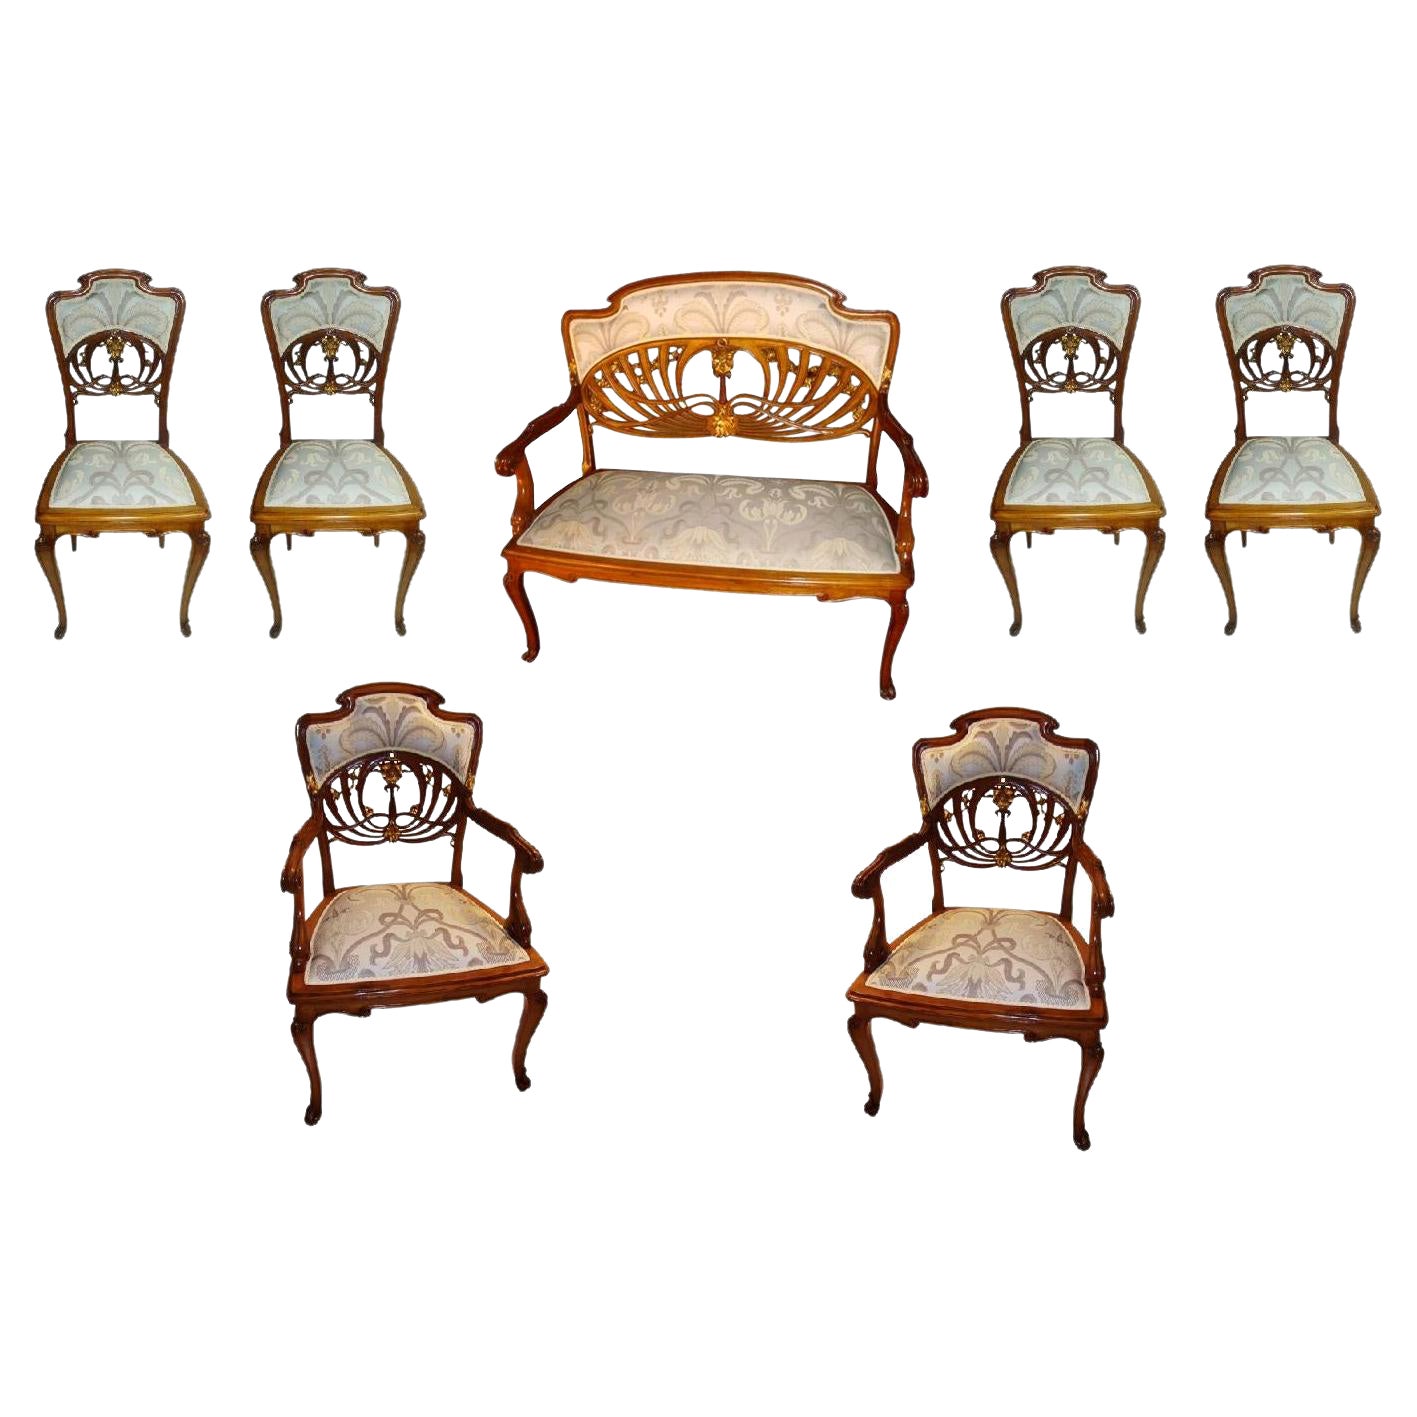 Ungewöhnliches Jugendstil-Set, 1 Sofa, 2 Sessel, 4 Stühle, Landhausstil, Frankreich, 1900